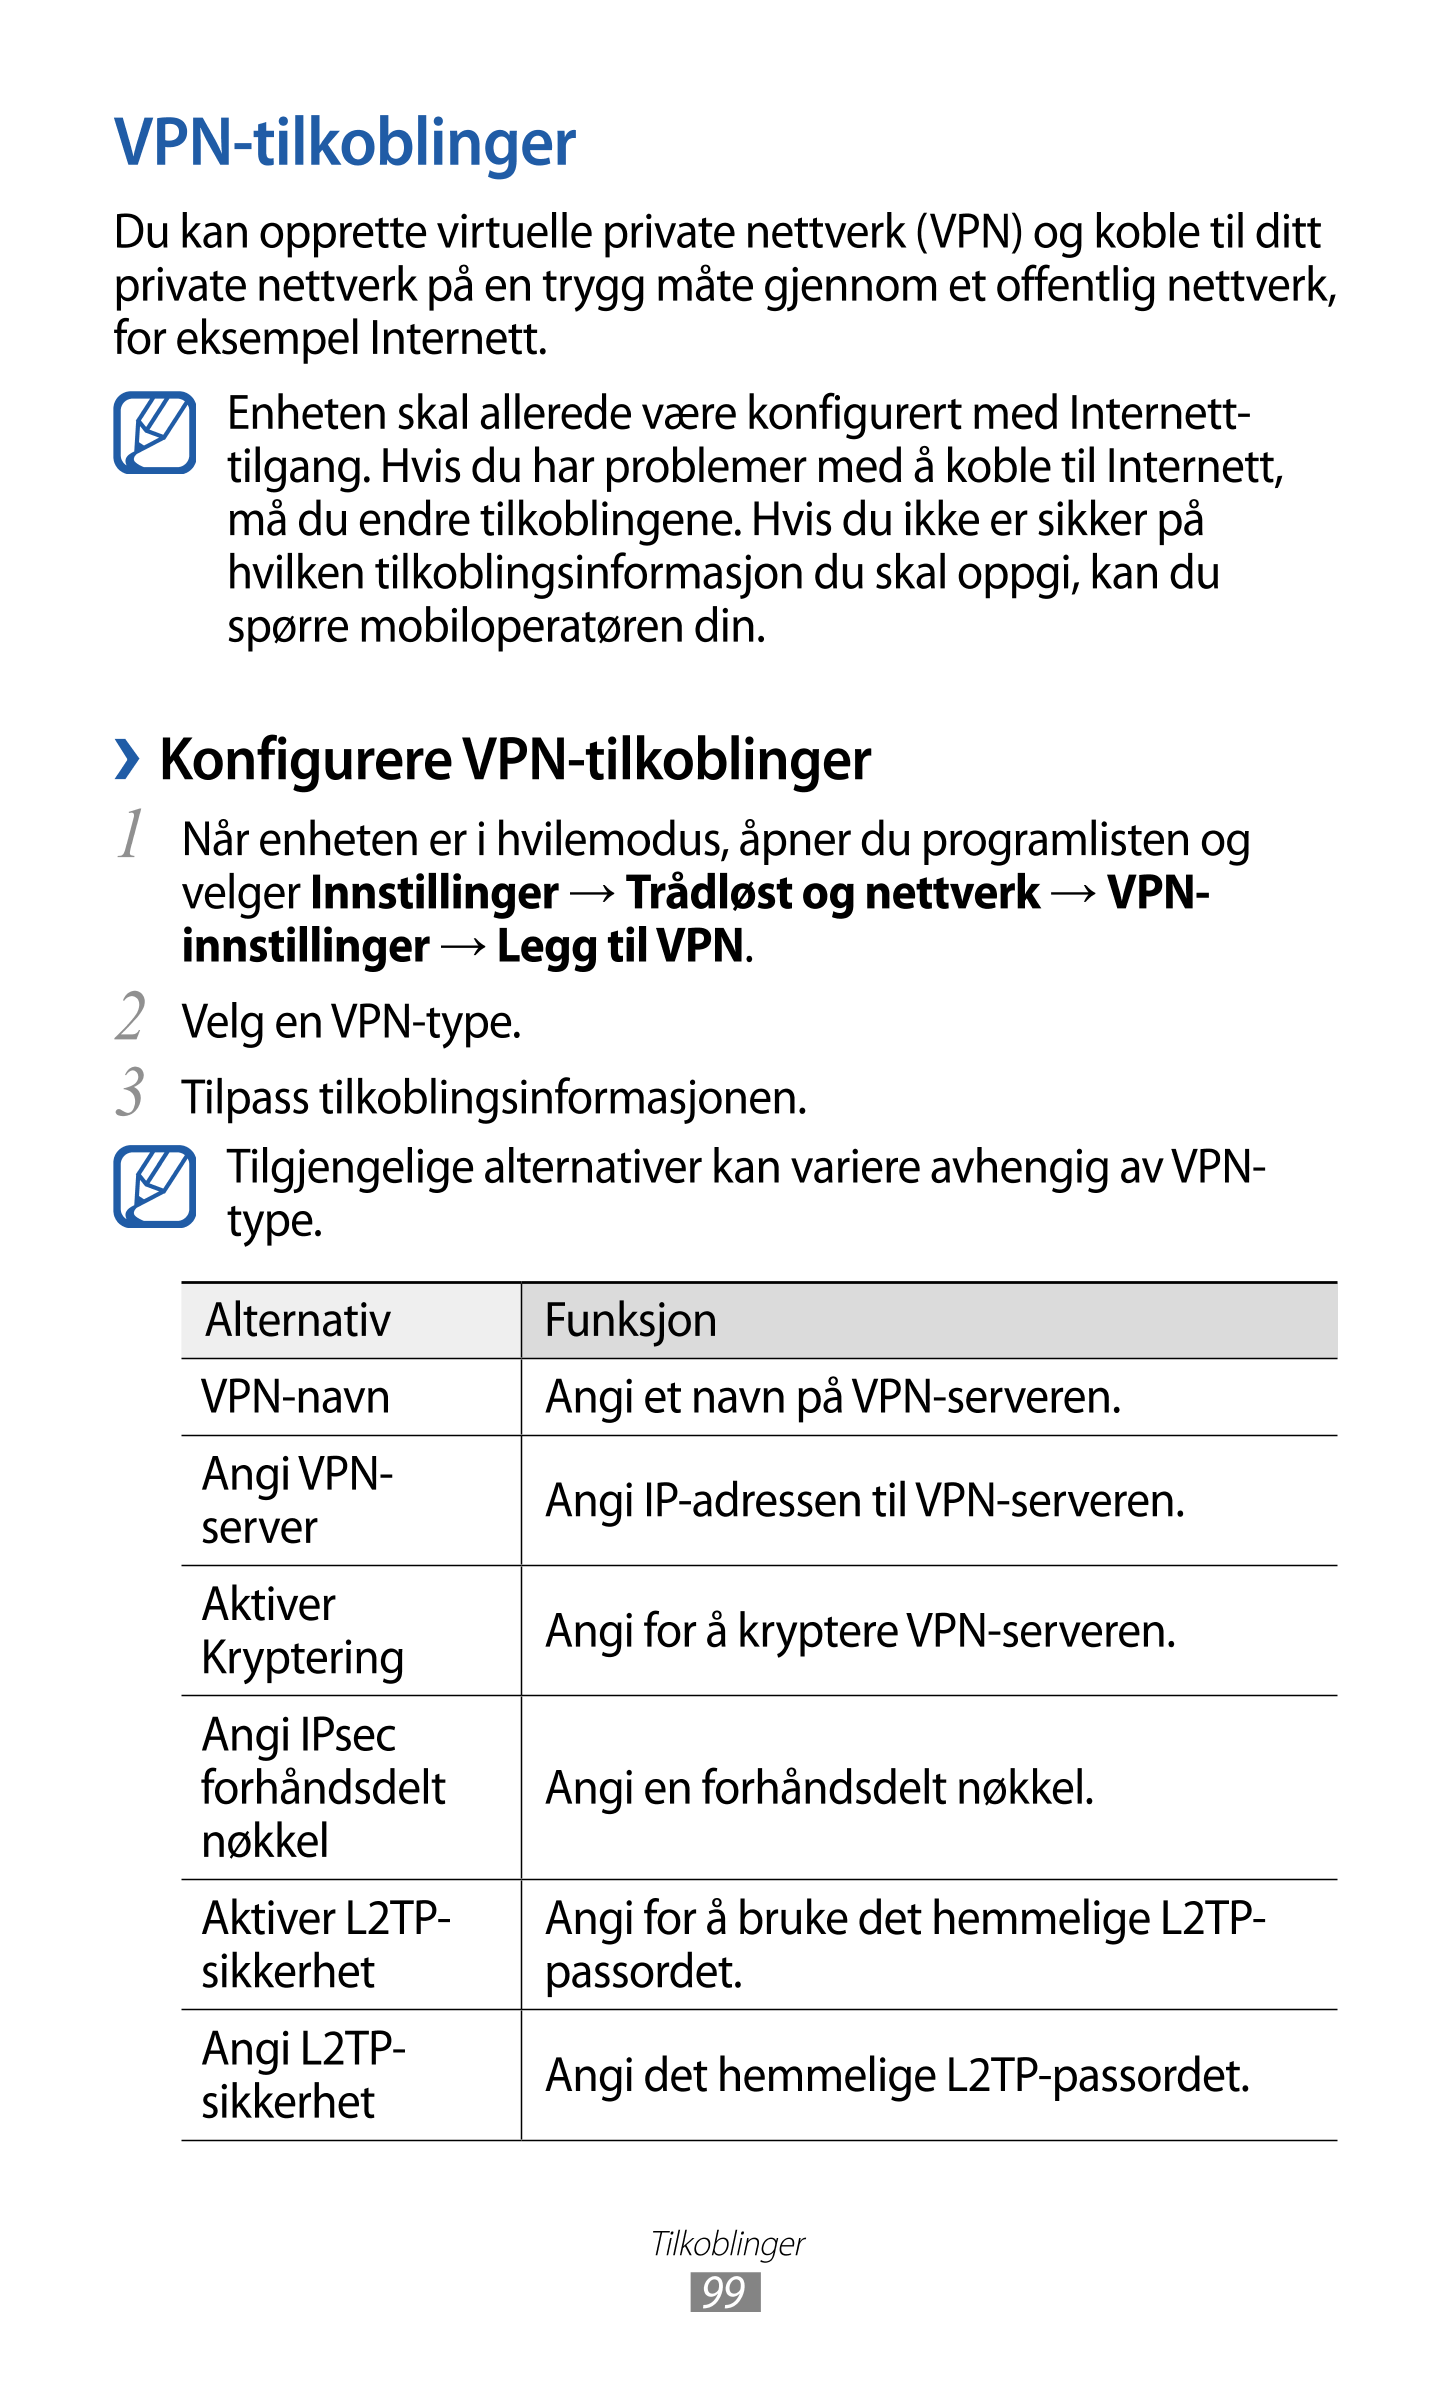 VPN-tilkoblinger
Du kan opprette virtuelle private nettverk (VPN) og koble til ditt 
private nettverk på en trygg måte gjennom e